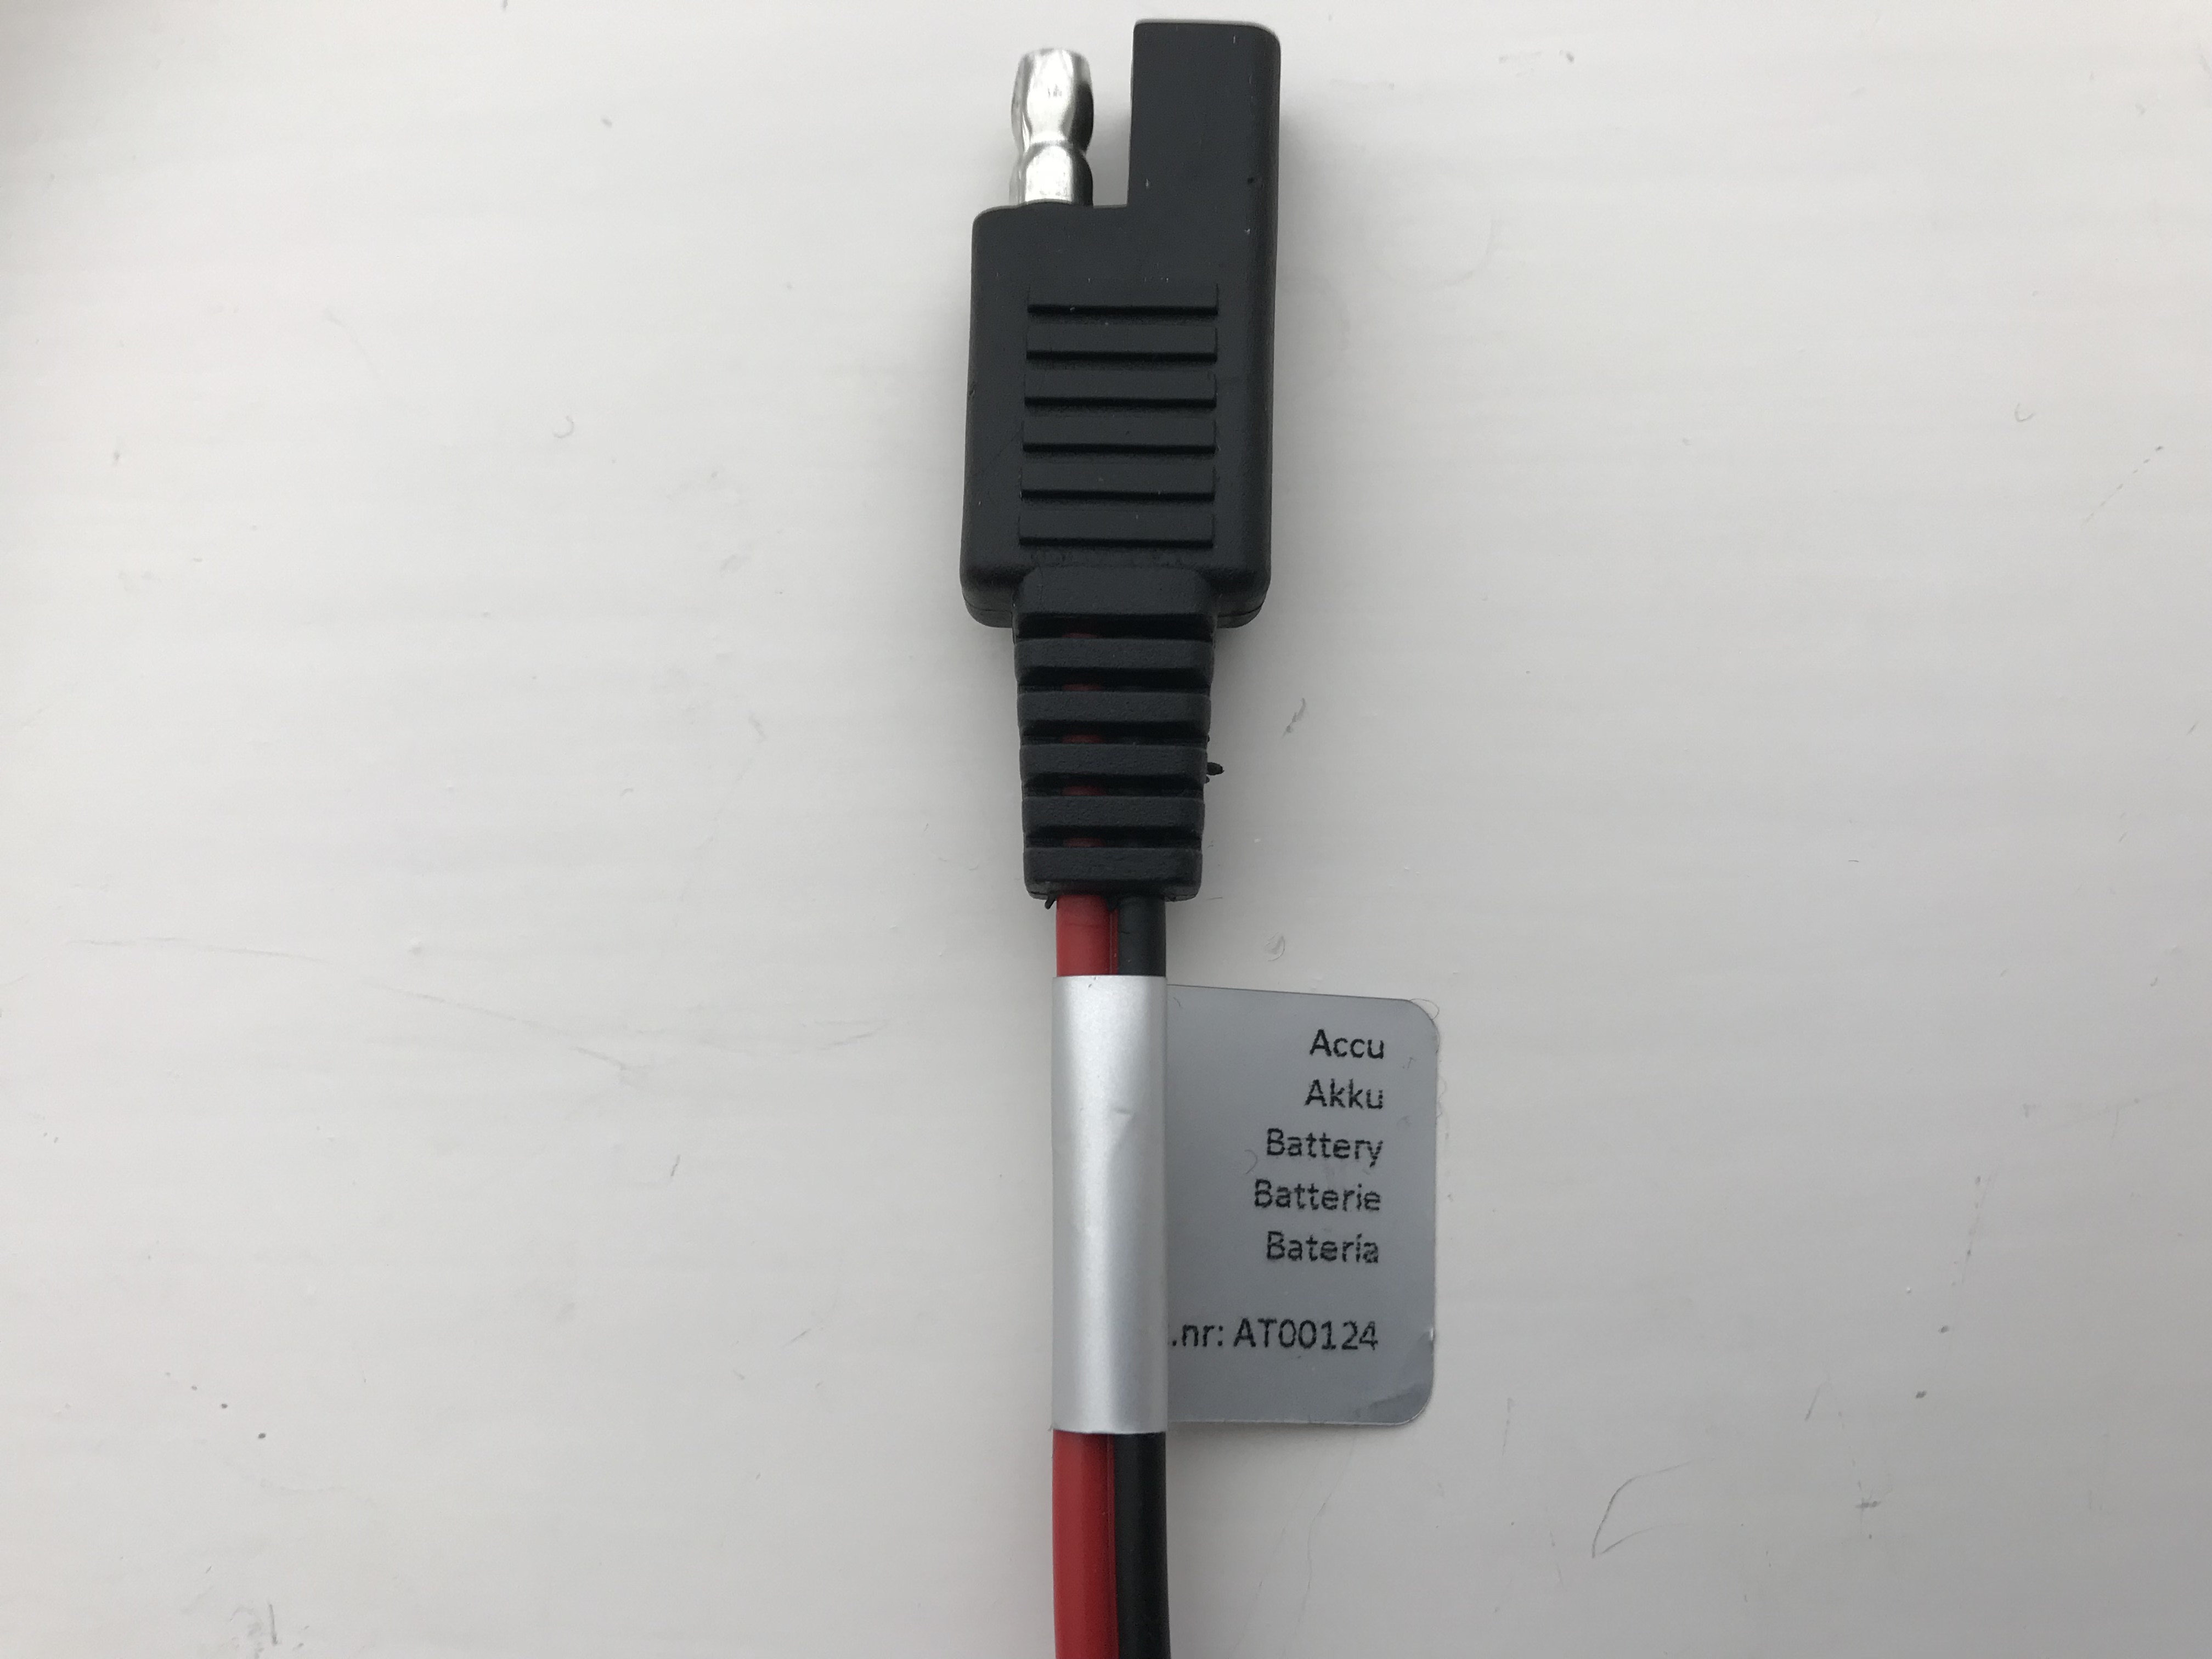 Batterytester  Smart Adapter für BionX TREK Kabel  36V